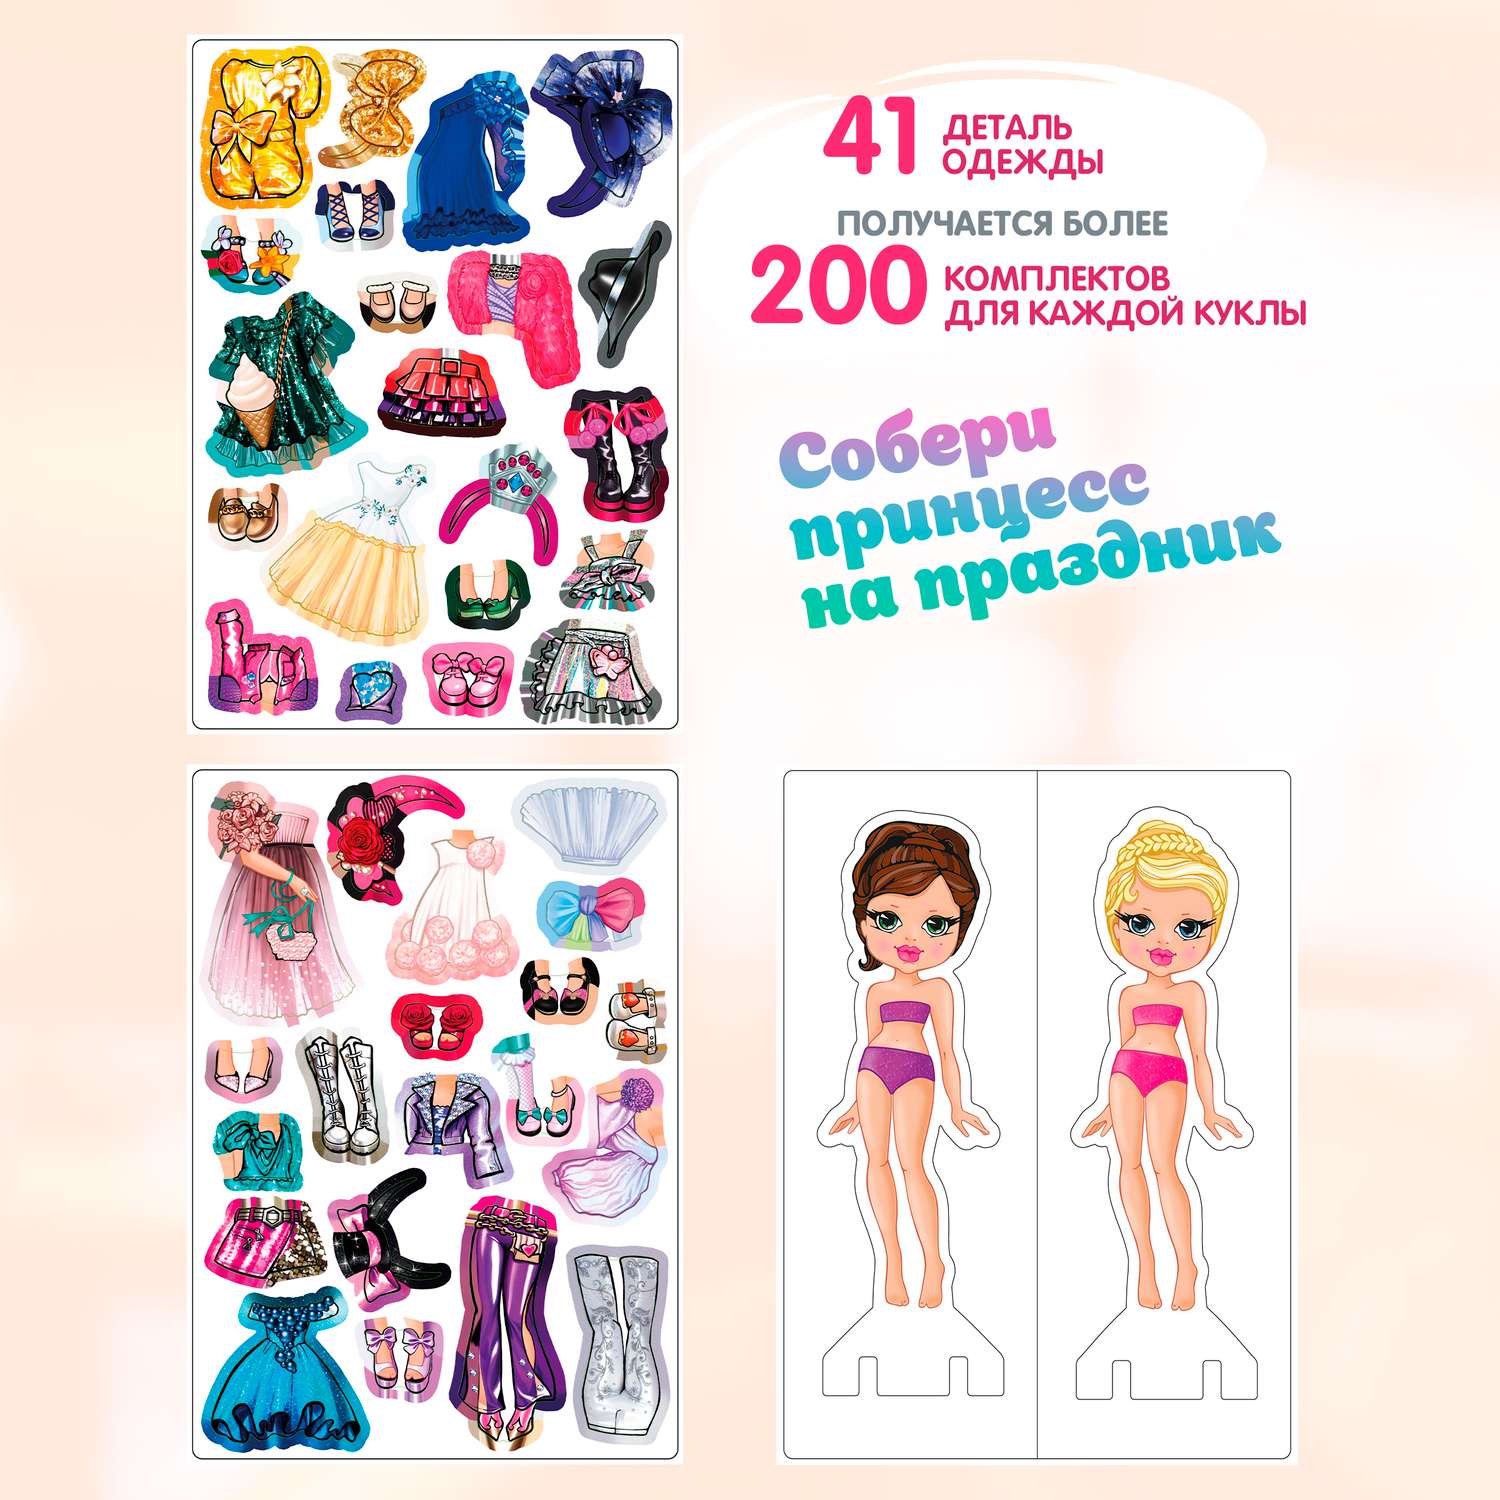 Магнитный игровой набор Premiere Publishing Магнитные куклы одевашки Принцессы 41 одежа 2 куклы - фото 1